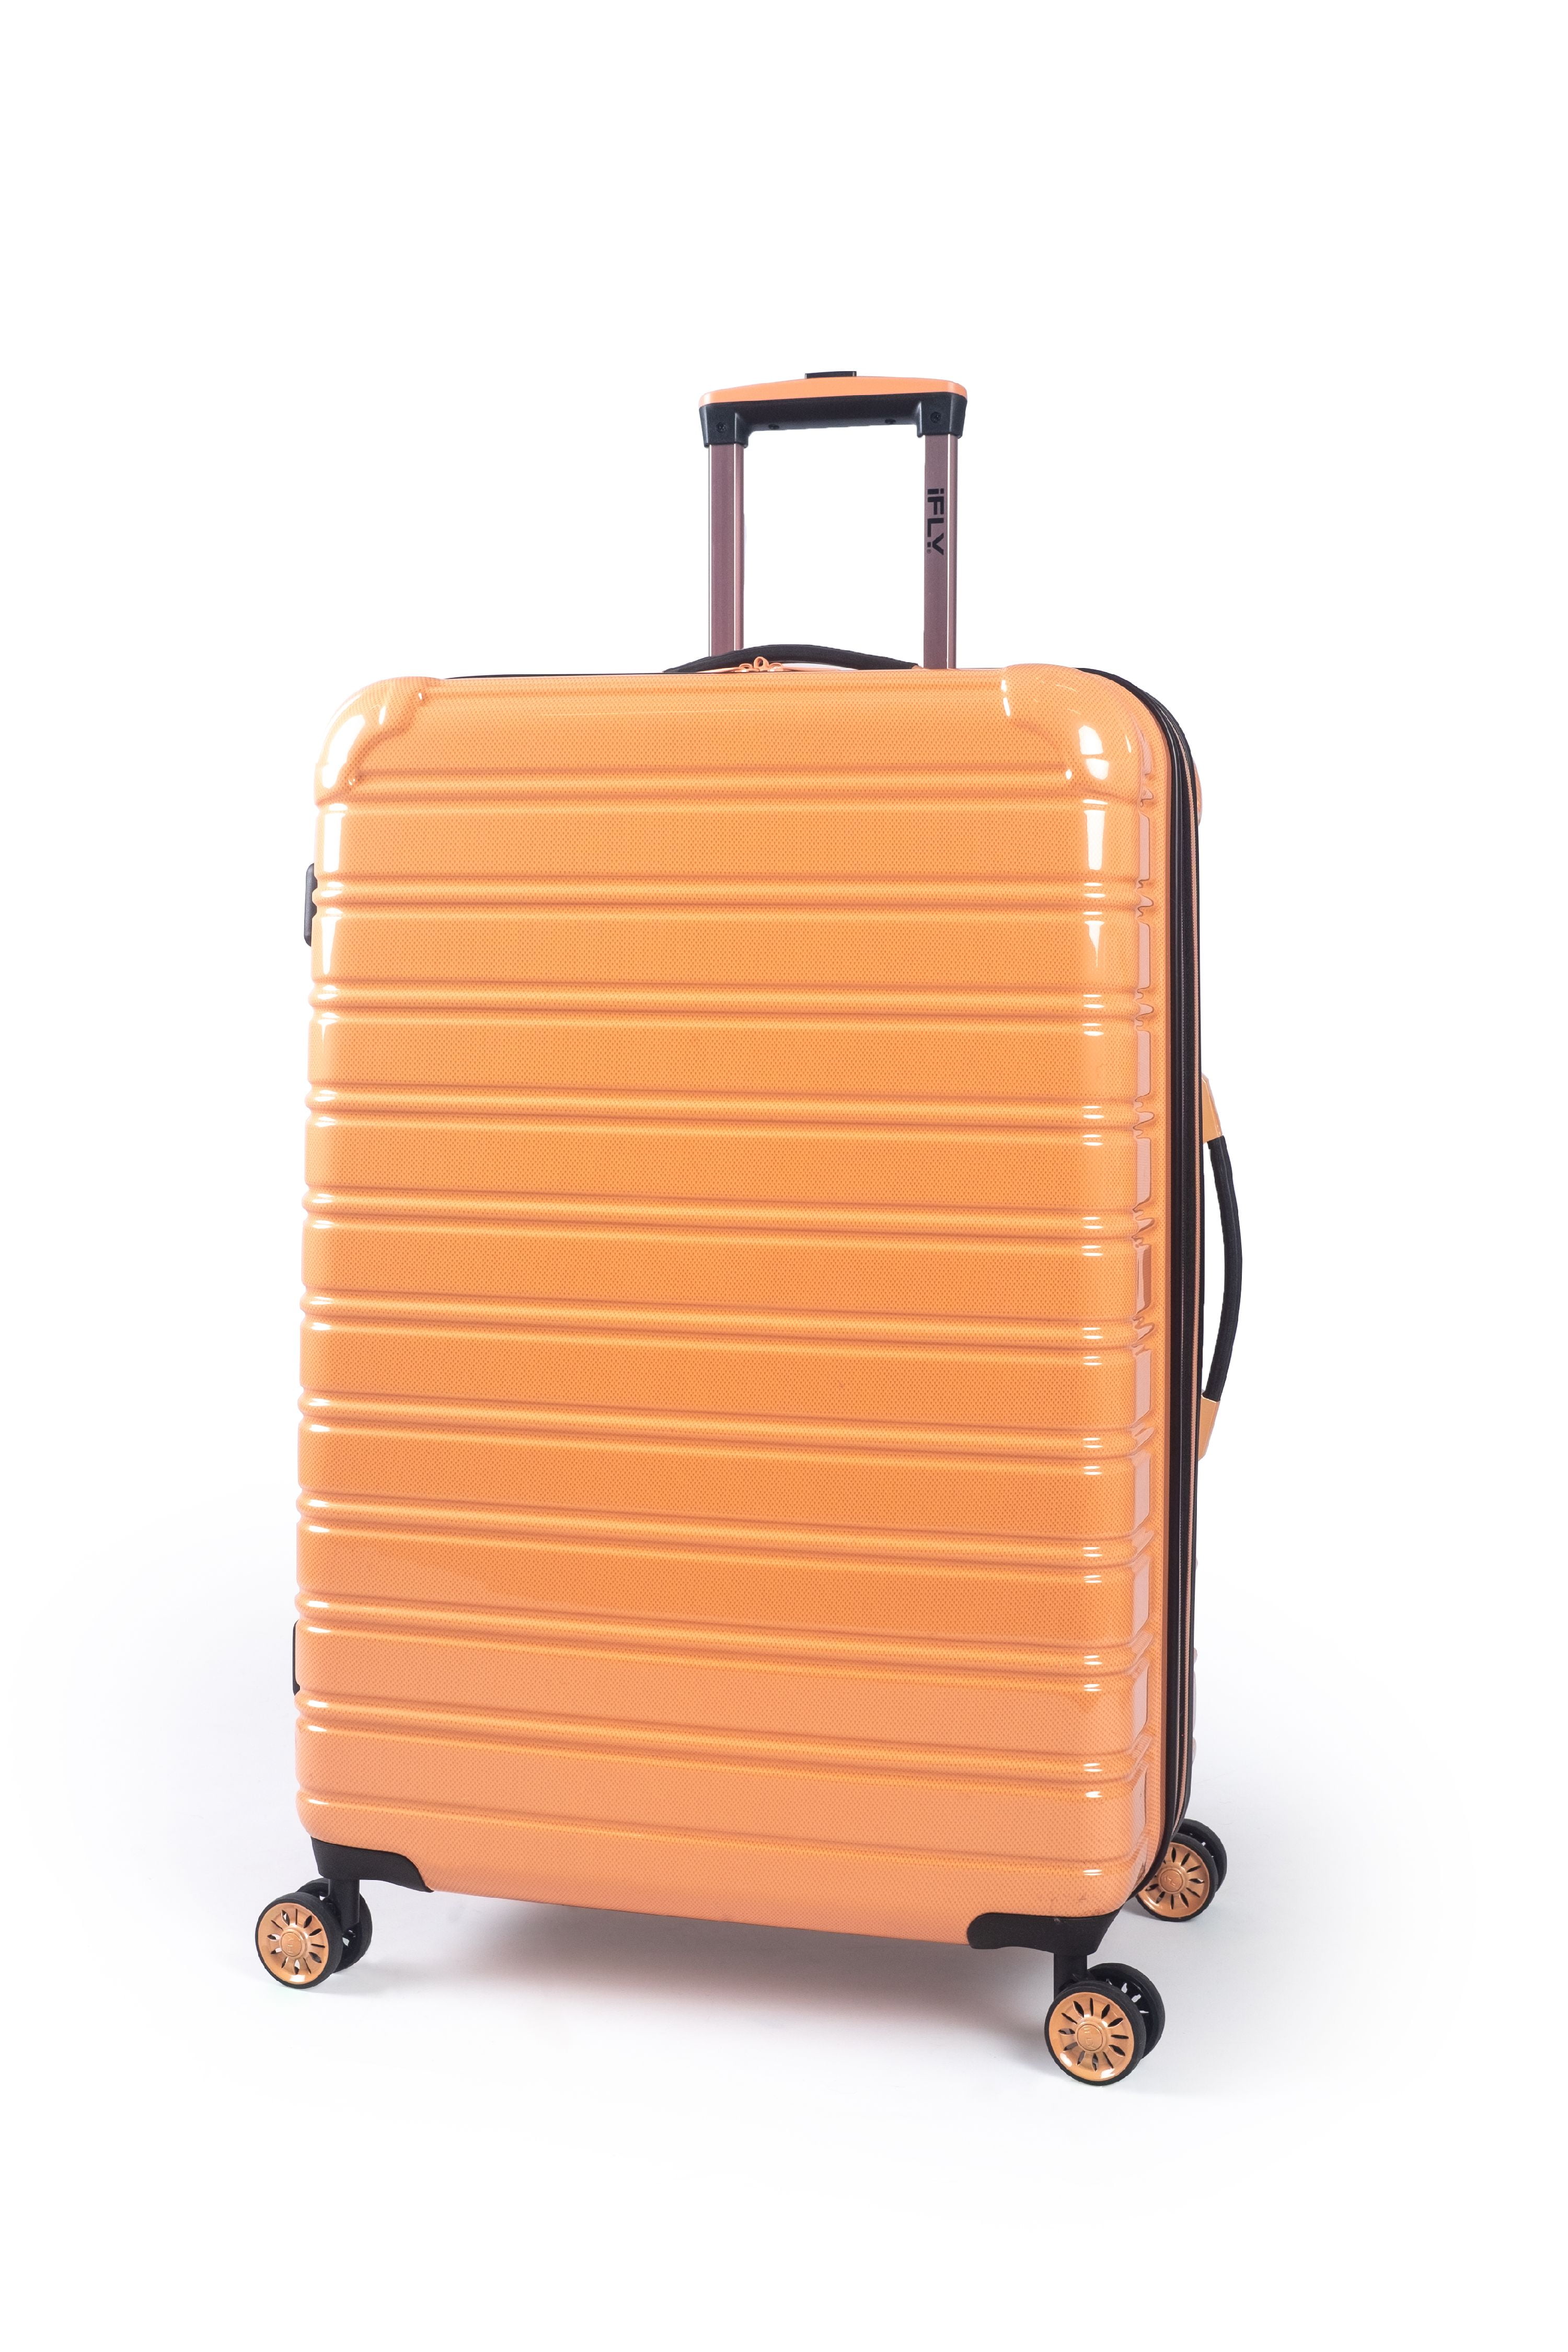 iFLY - iFLY Hardside Luggage Fibertech 28